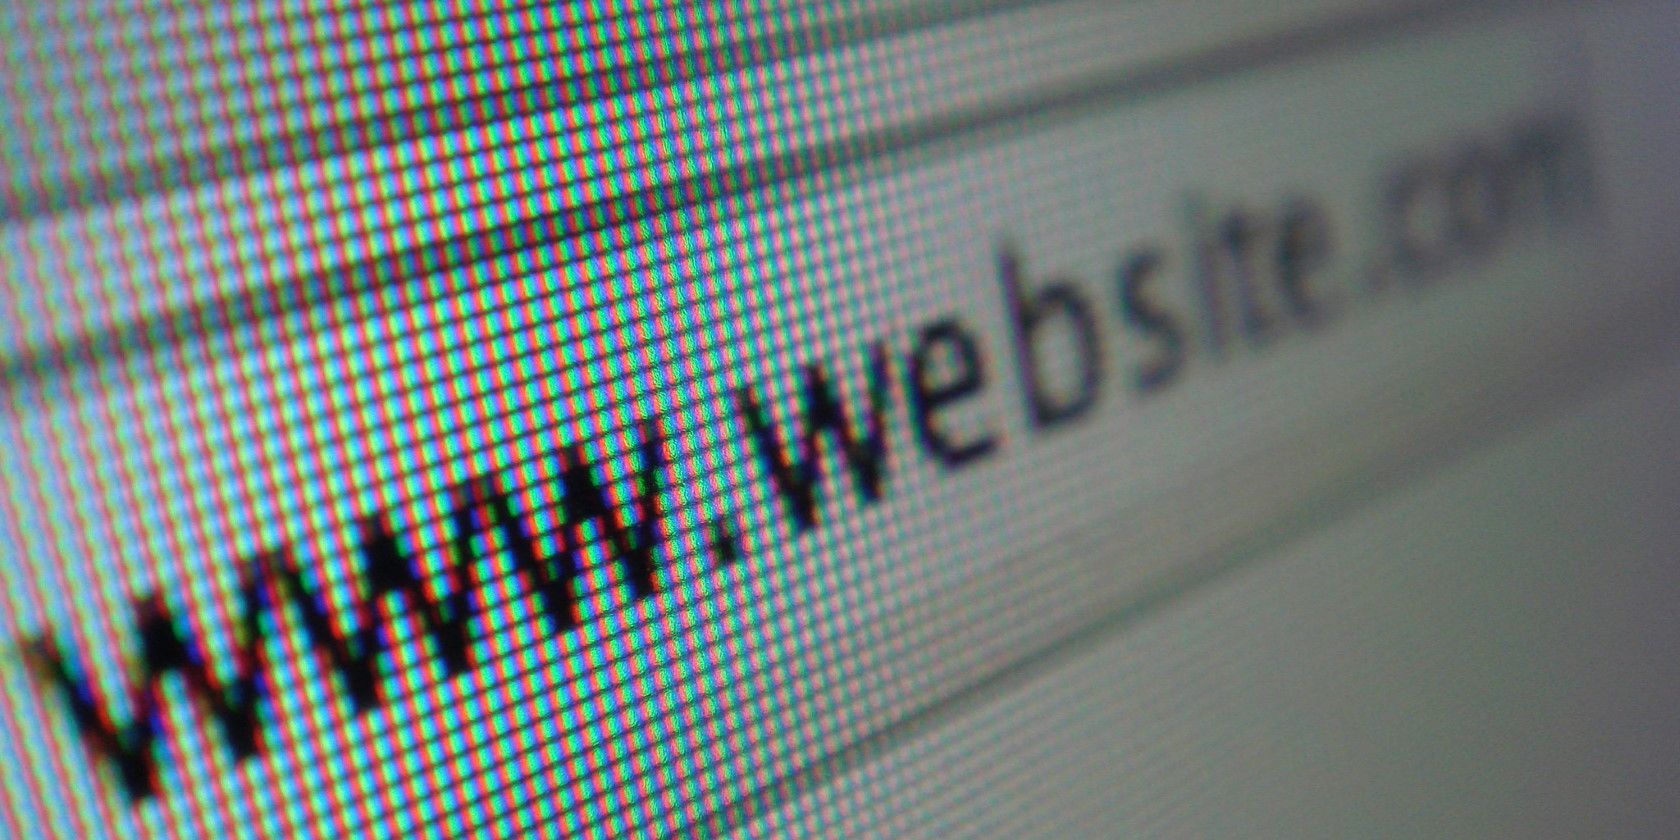 A closeup of an example website URL